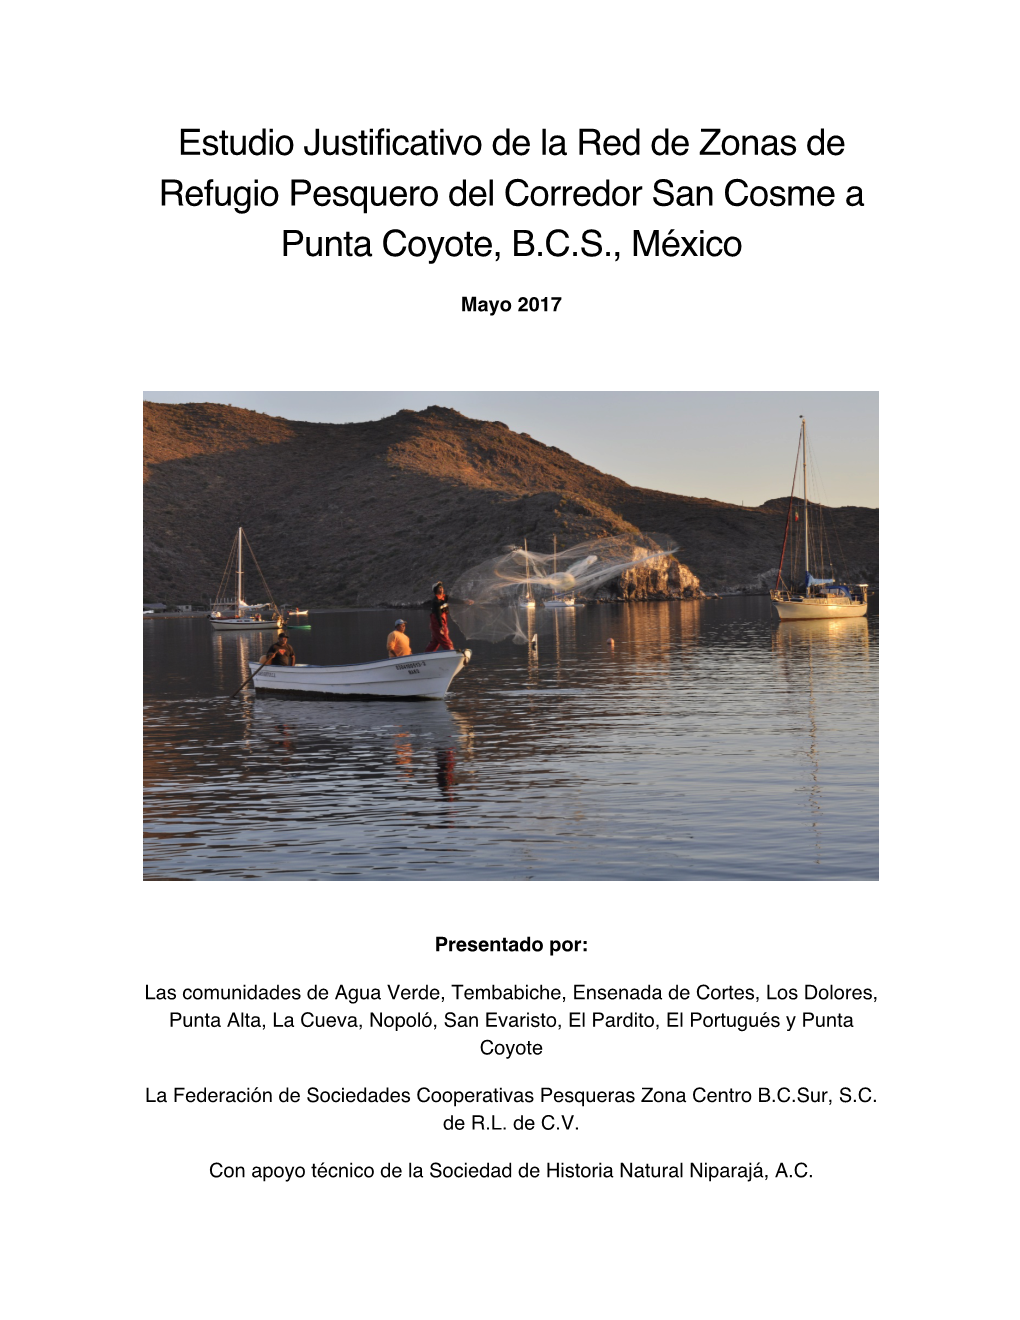 Estudio Justificativo De La Red De Zonas De Refugio Pesquero Del Corredor San Cosme a Punta Coyote, B.C.S., México